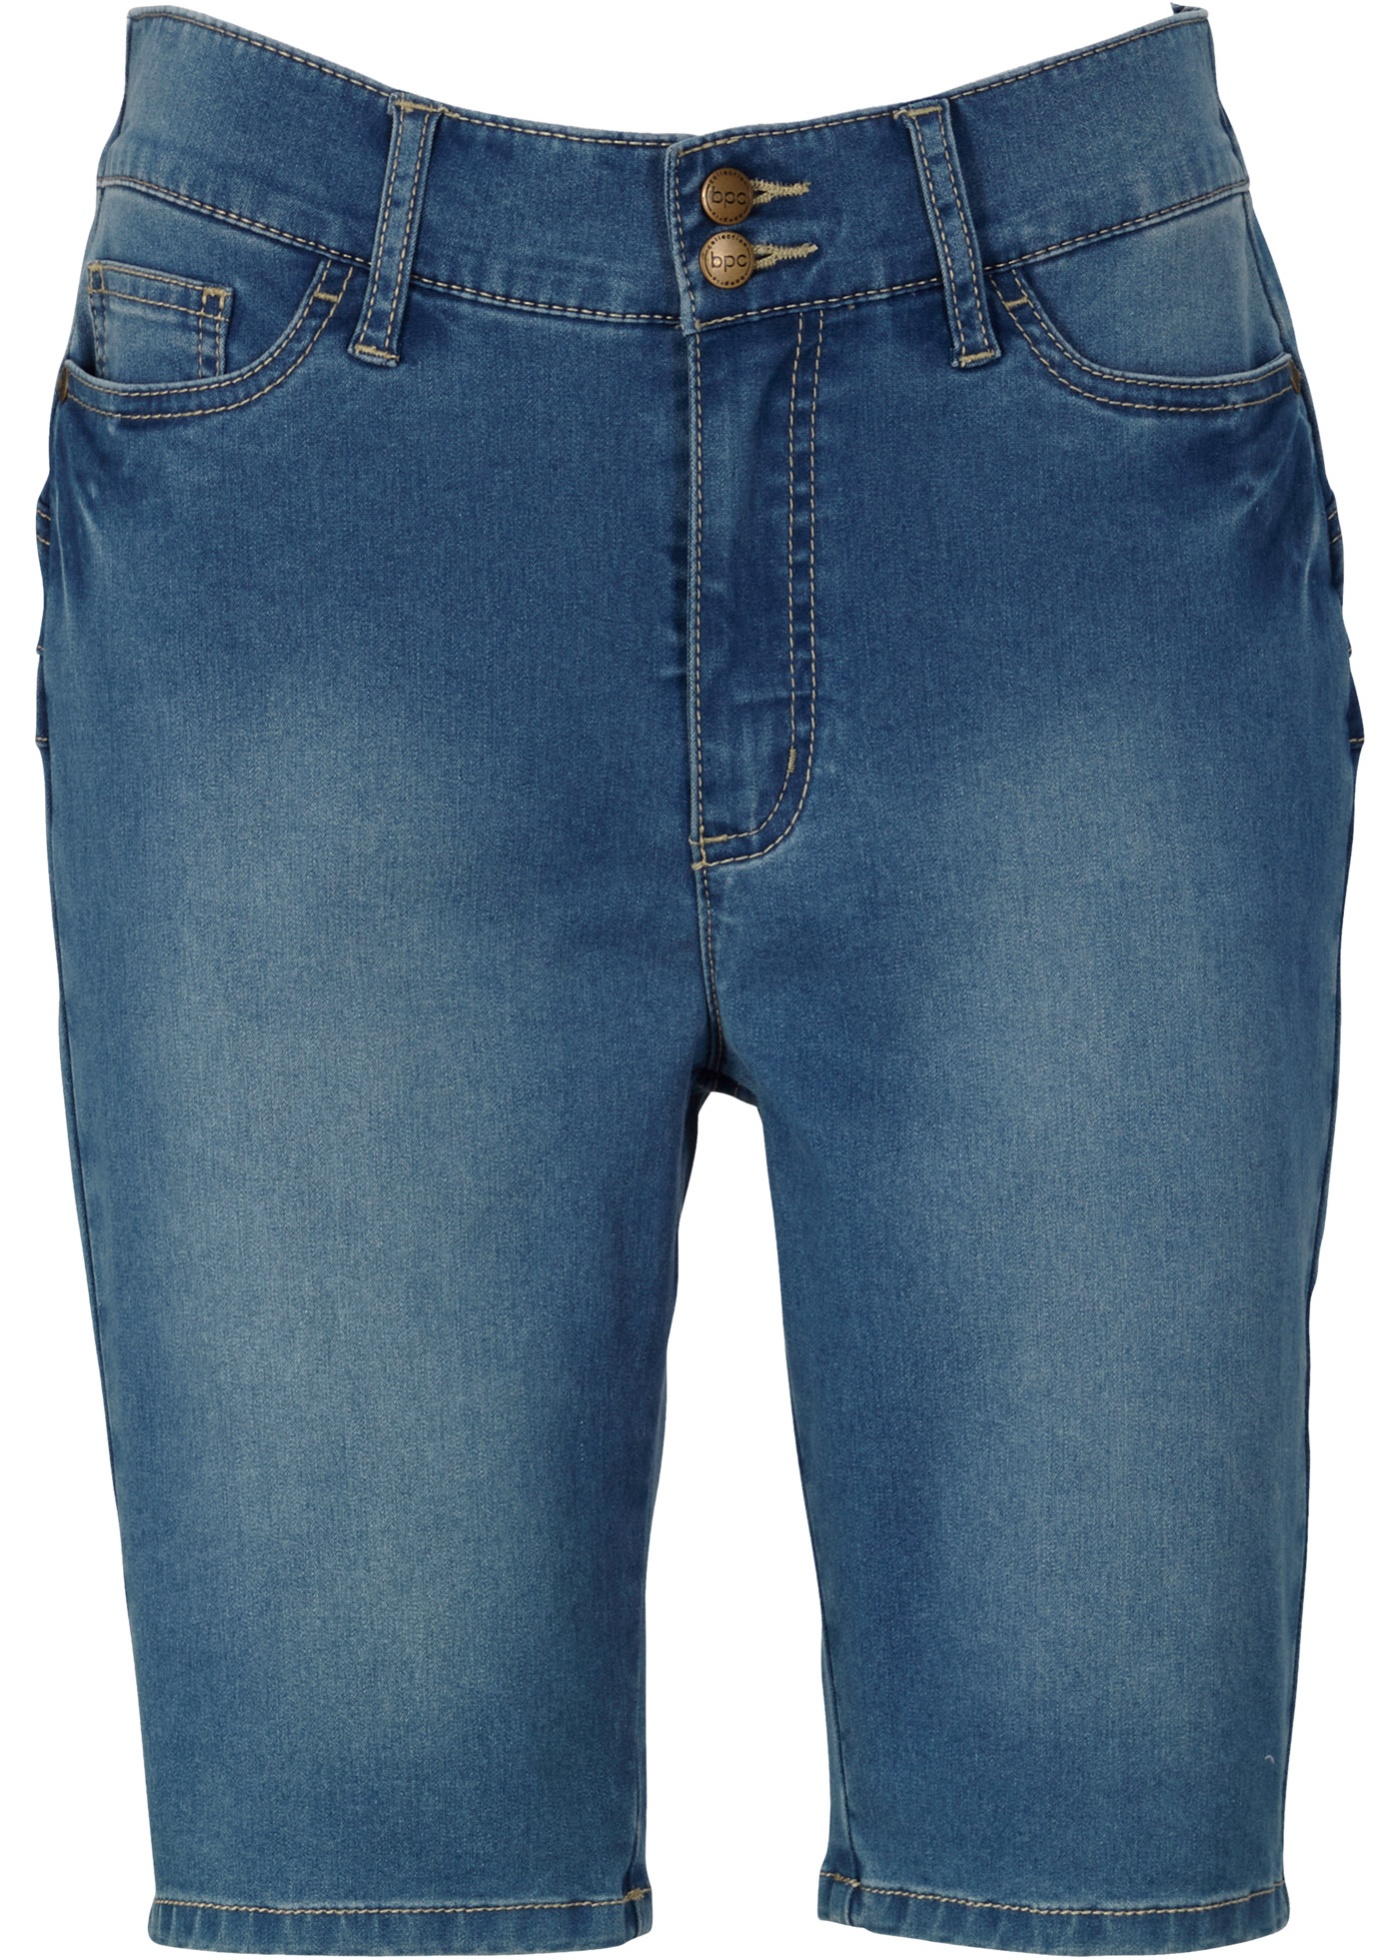 Super-strečové džínsové bermudy, vysoký pás